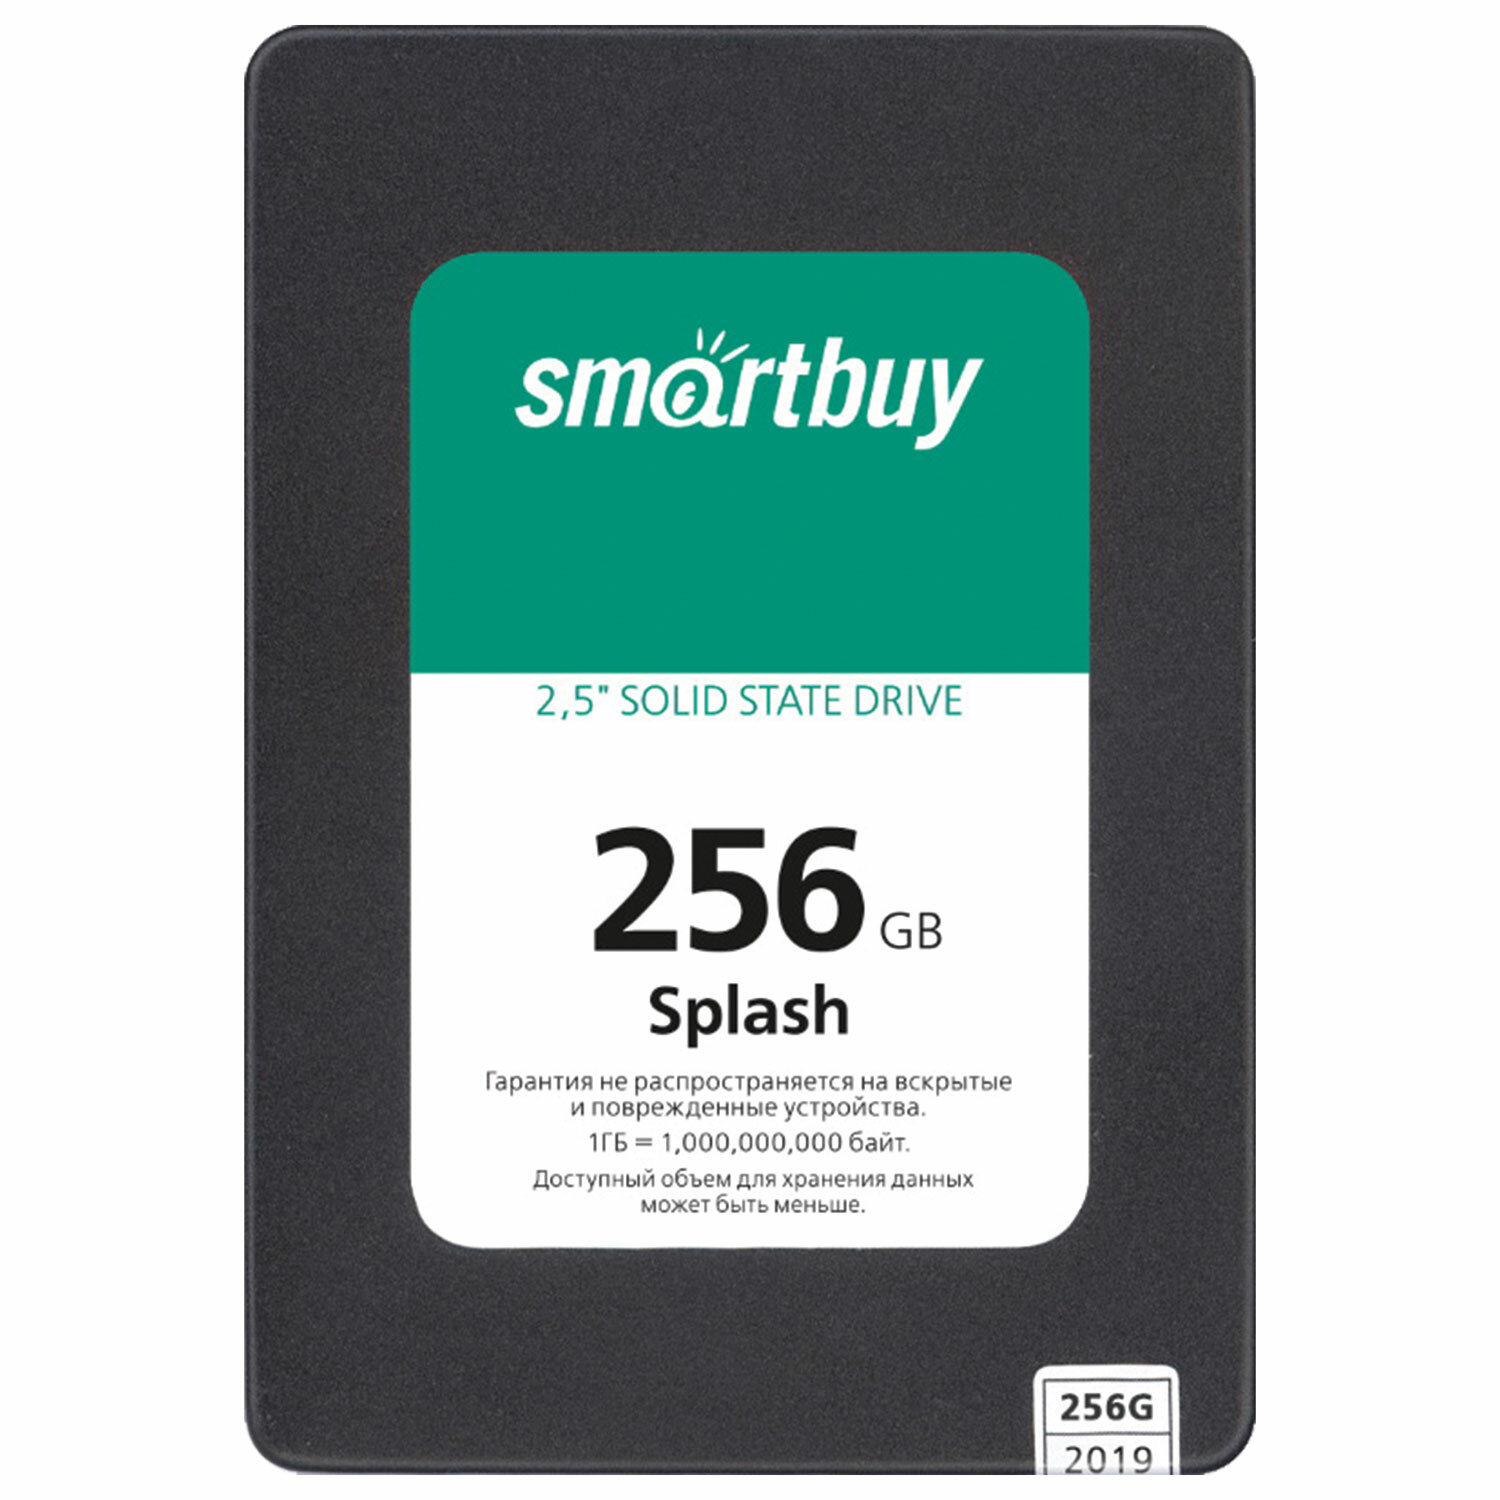  SMARTBUY SSD-256GT-MX902